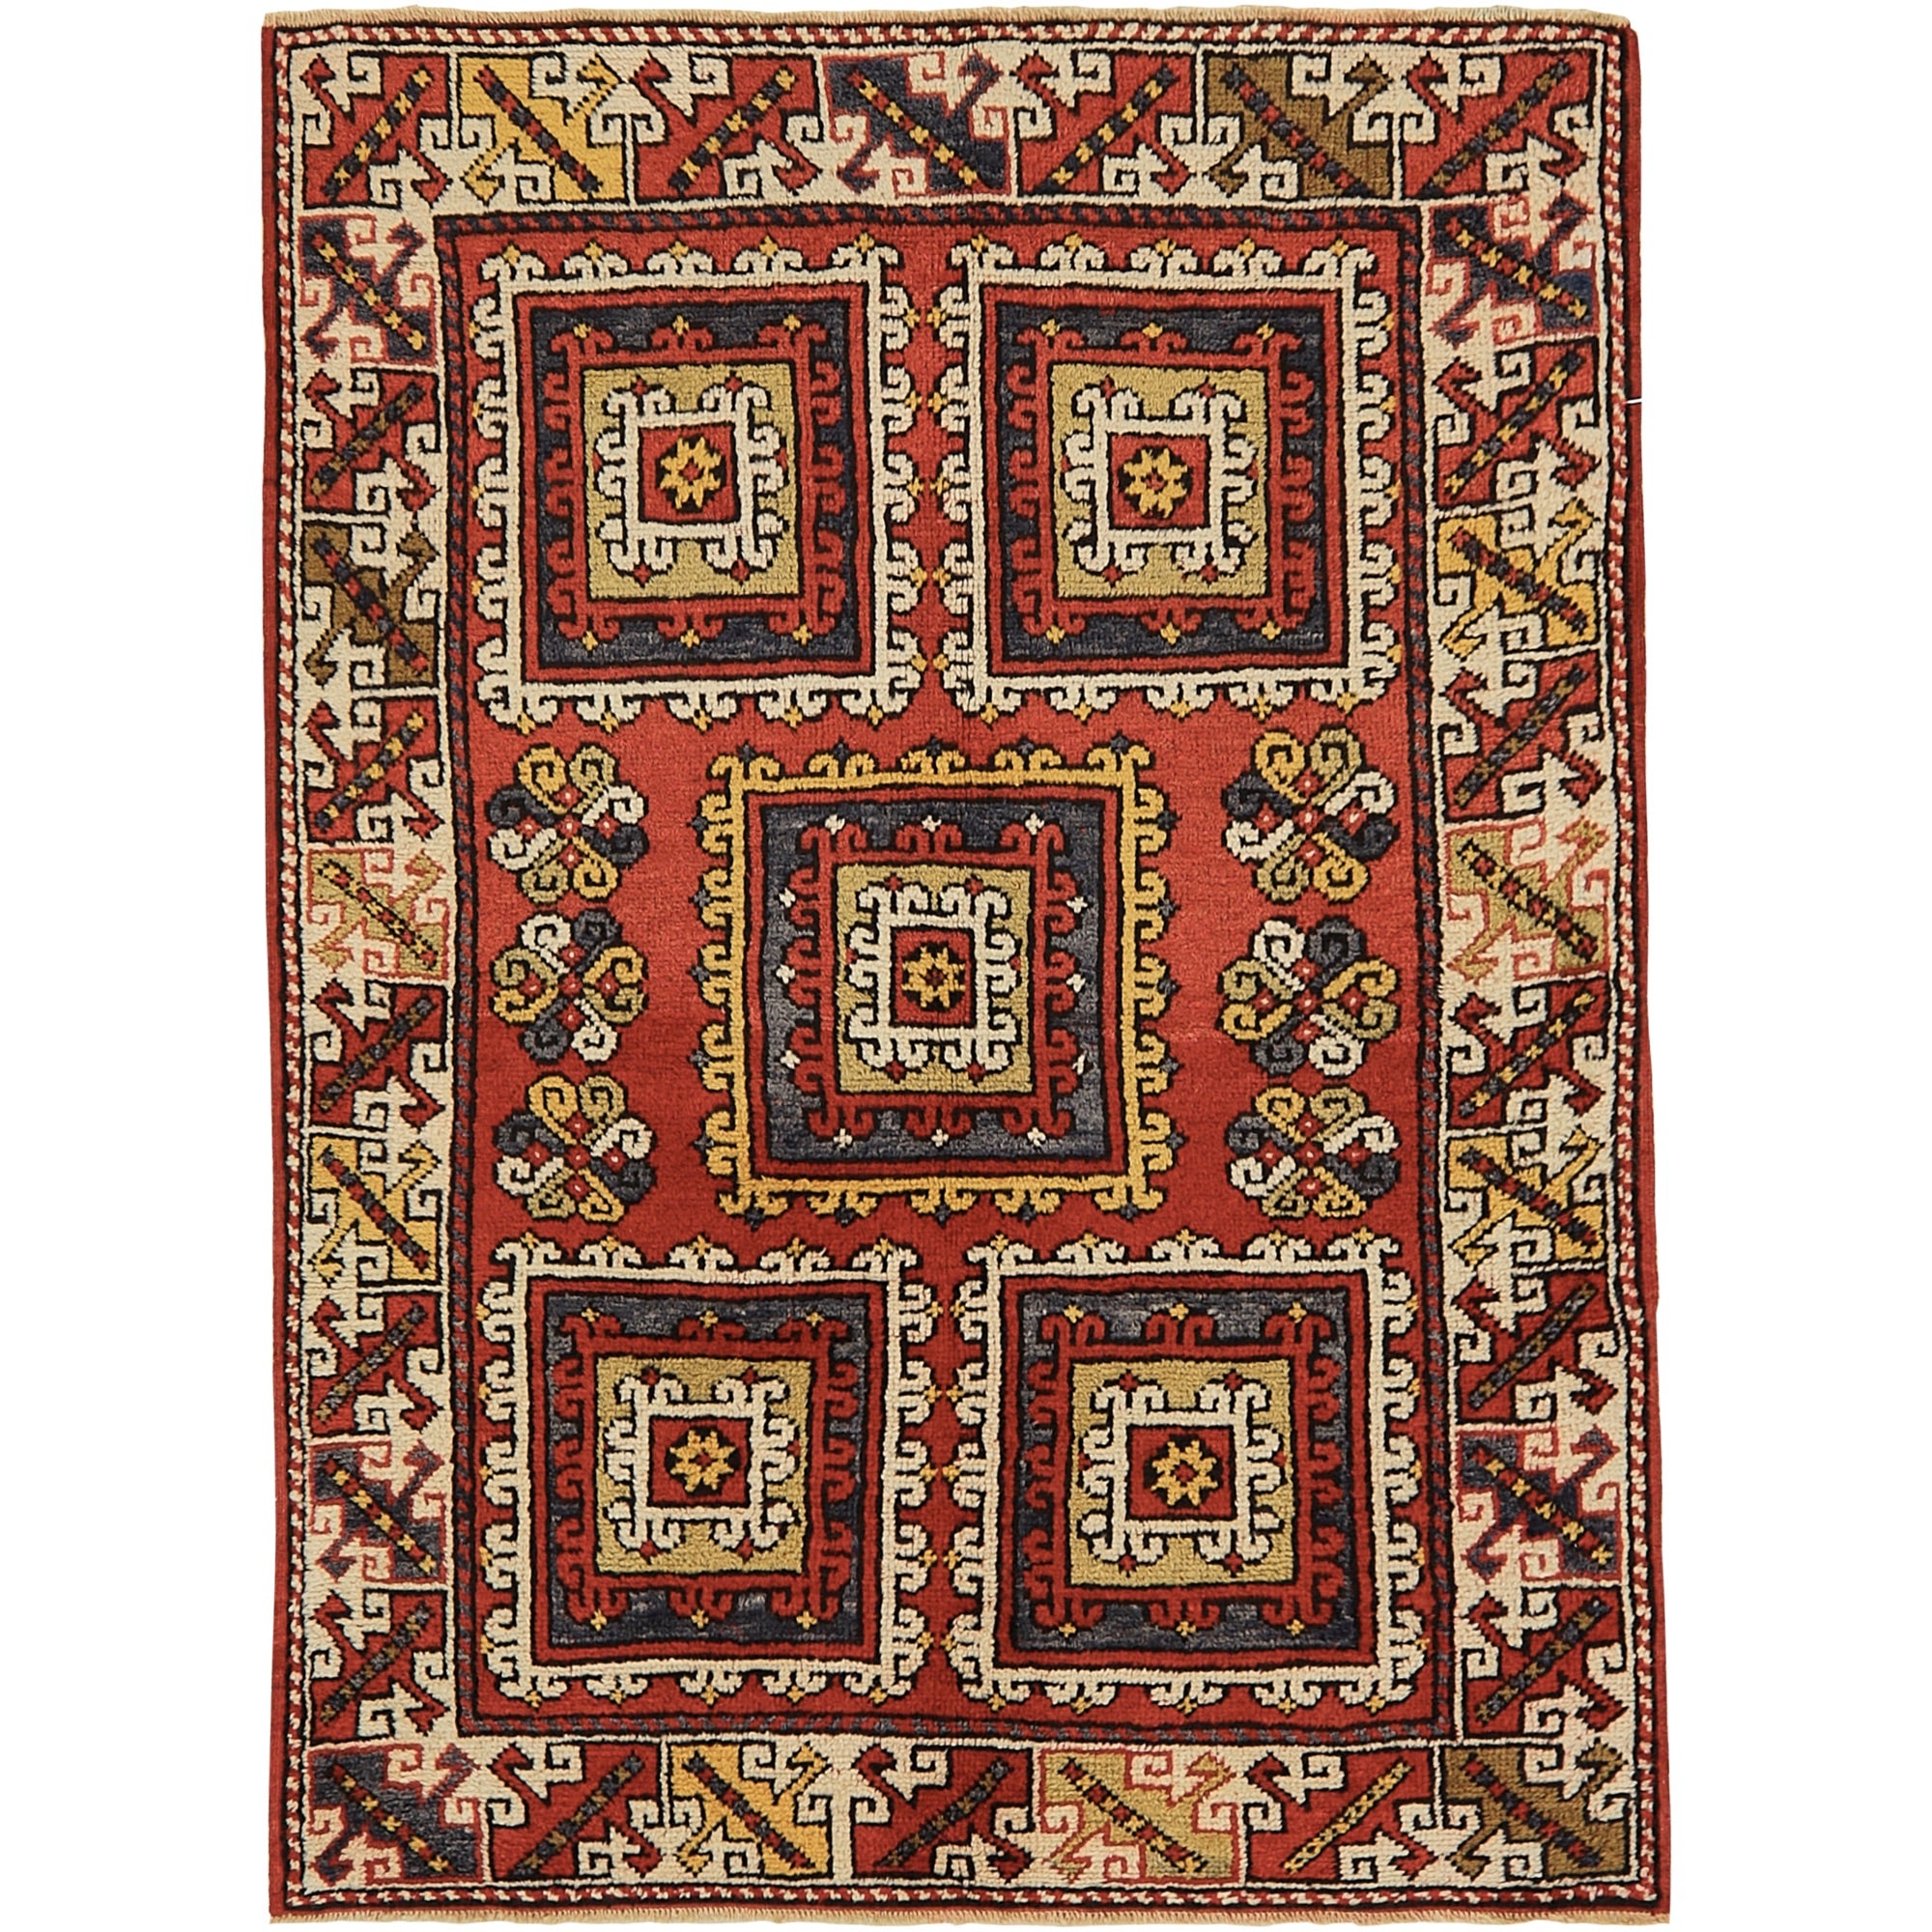 気の多い絨毯屋さん61.5×130 ViNTAGE TURKiSH RUG